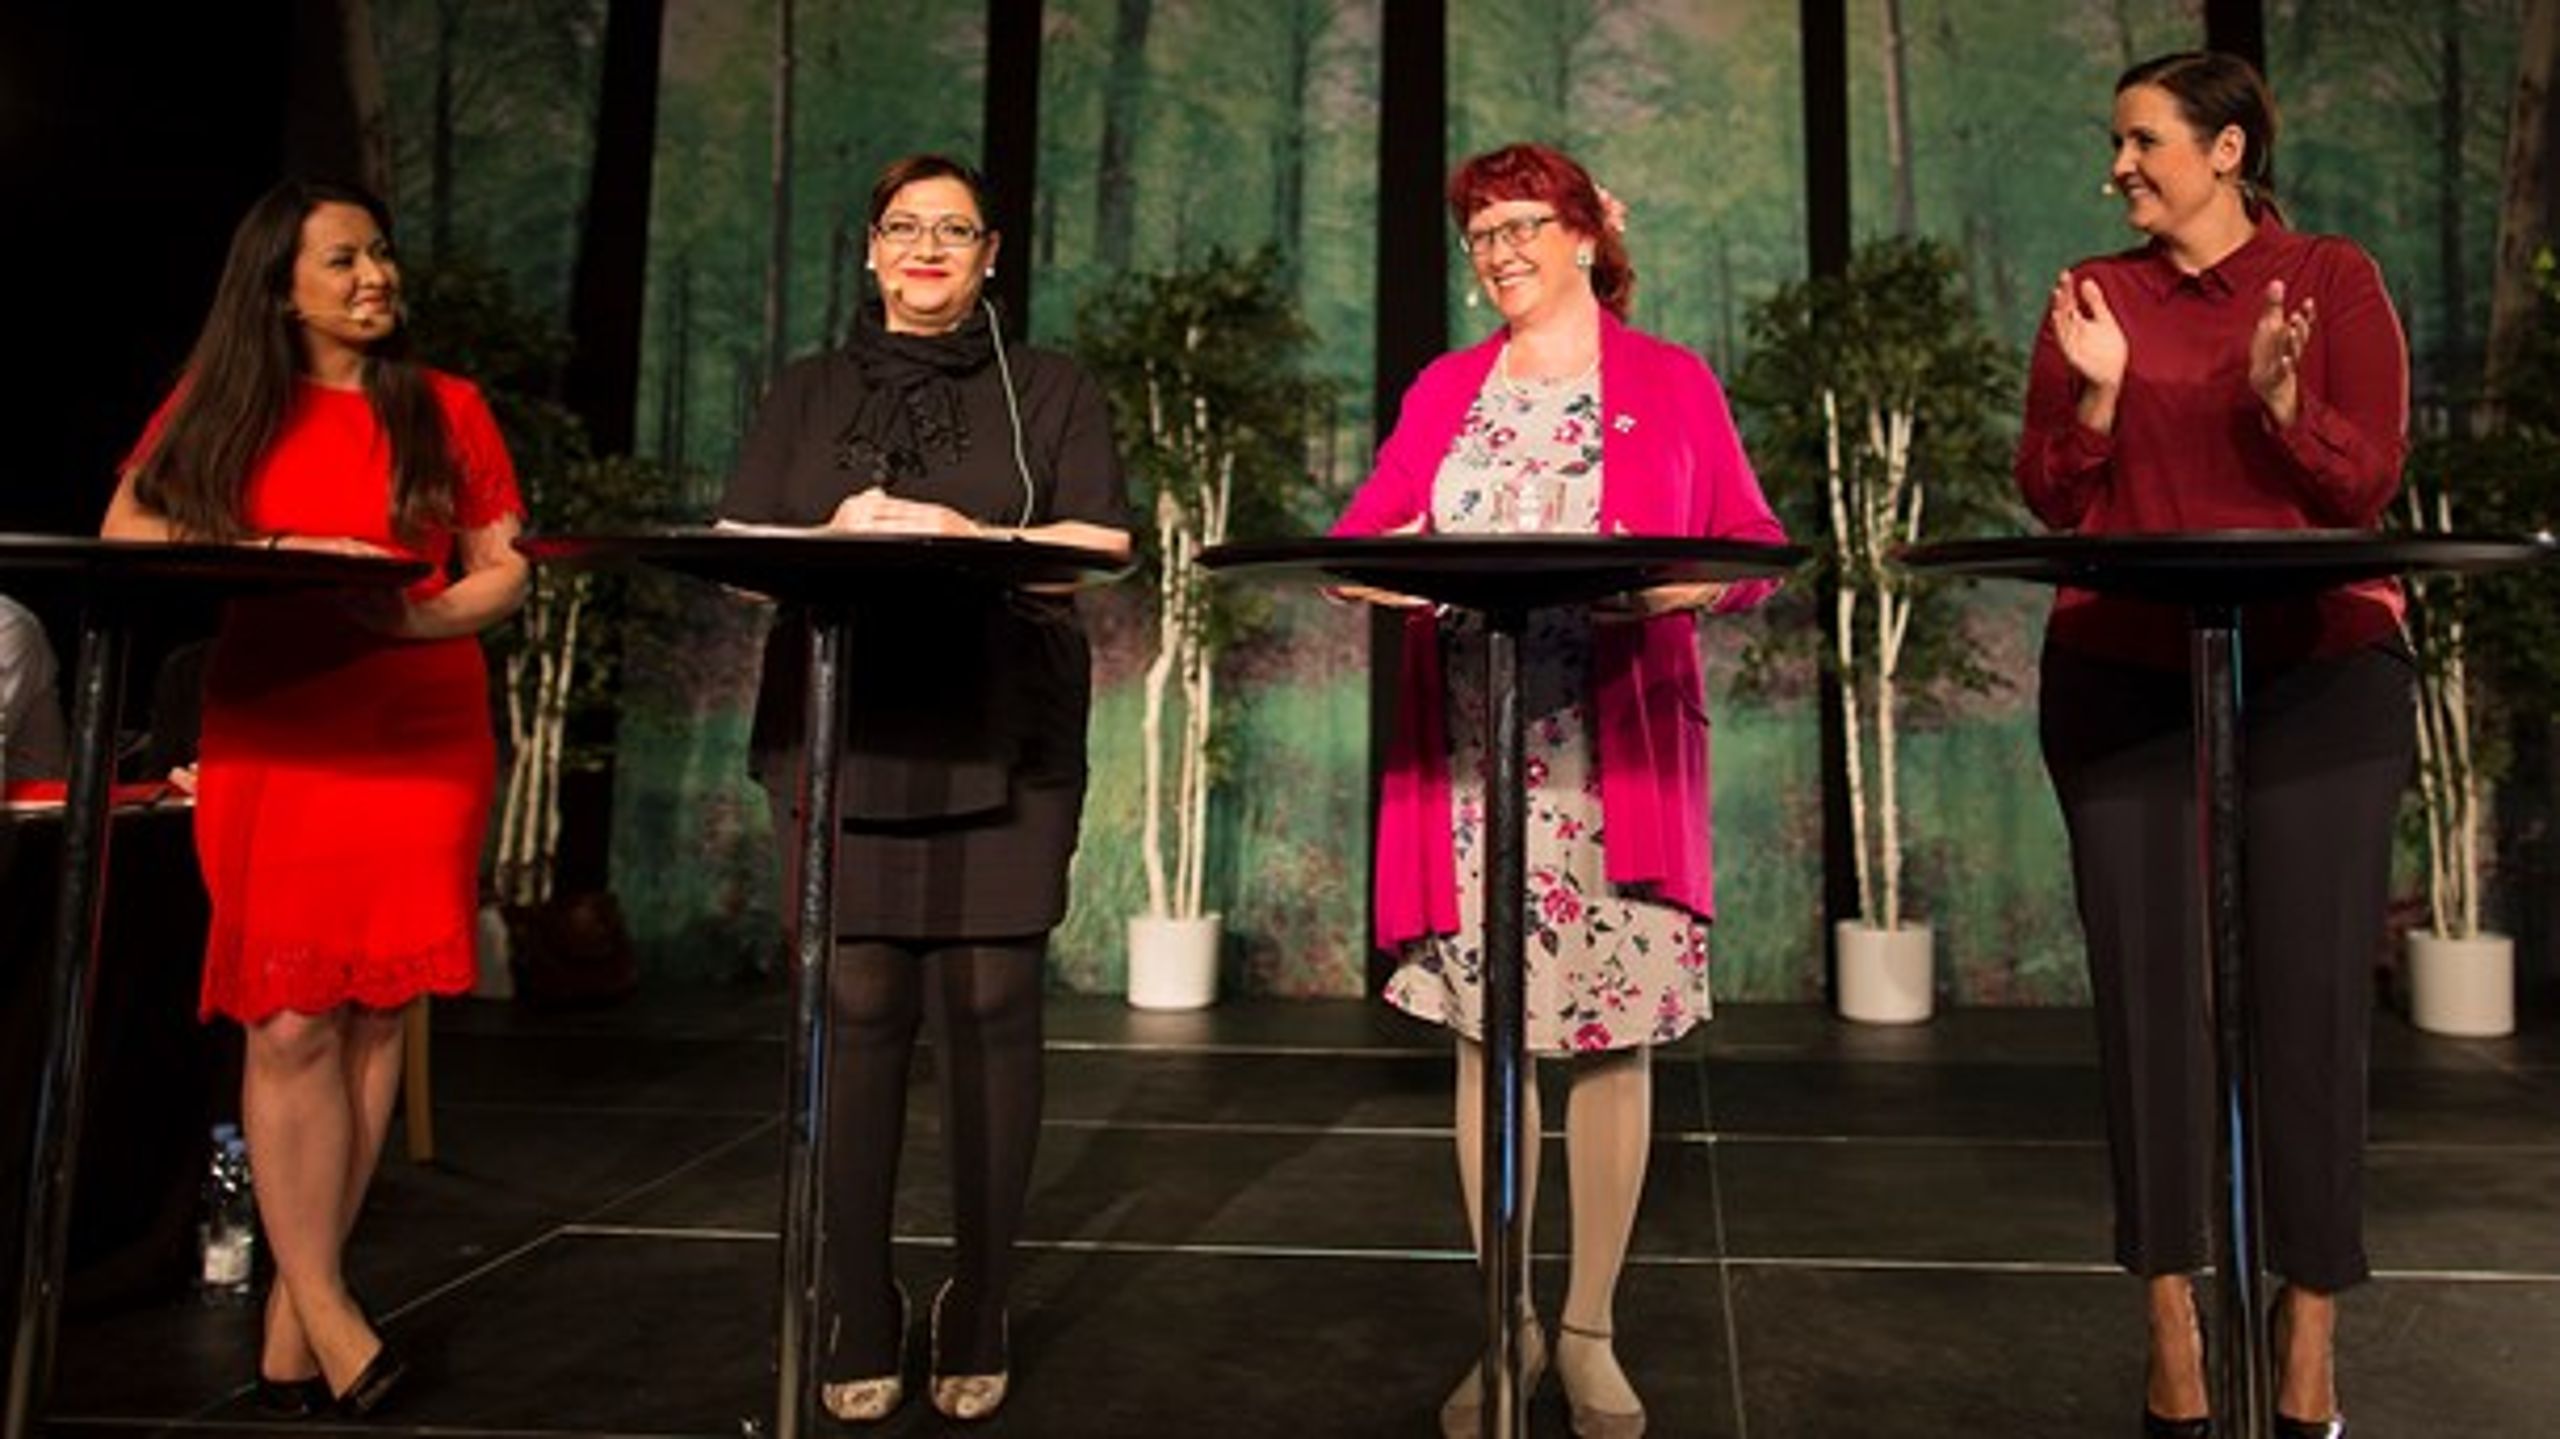 SF afholder landsmøde på Vingstedcenteret i Vejle lørdag 16. april 2016. Formand Pia Olsen Dyhr (th.) holder tale, hvor også indvandring var på dagsordenen. På scenen blev hun flankeret af (fra venstre) Geeti Amiri, Elmas Berke og skoleinspektør Lise Egholm.